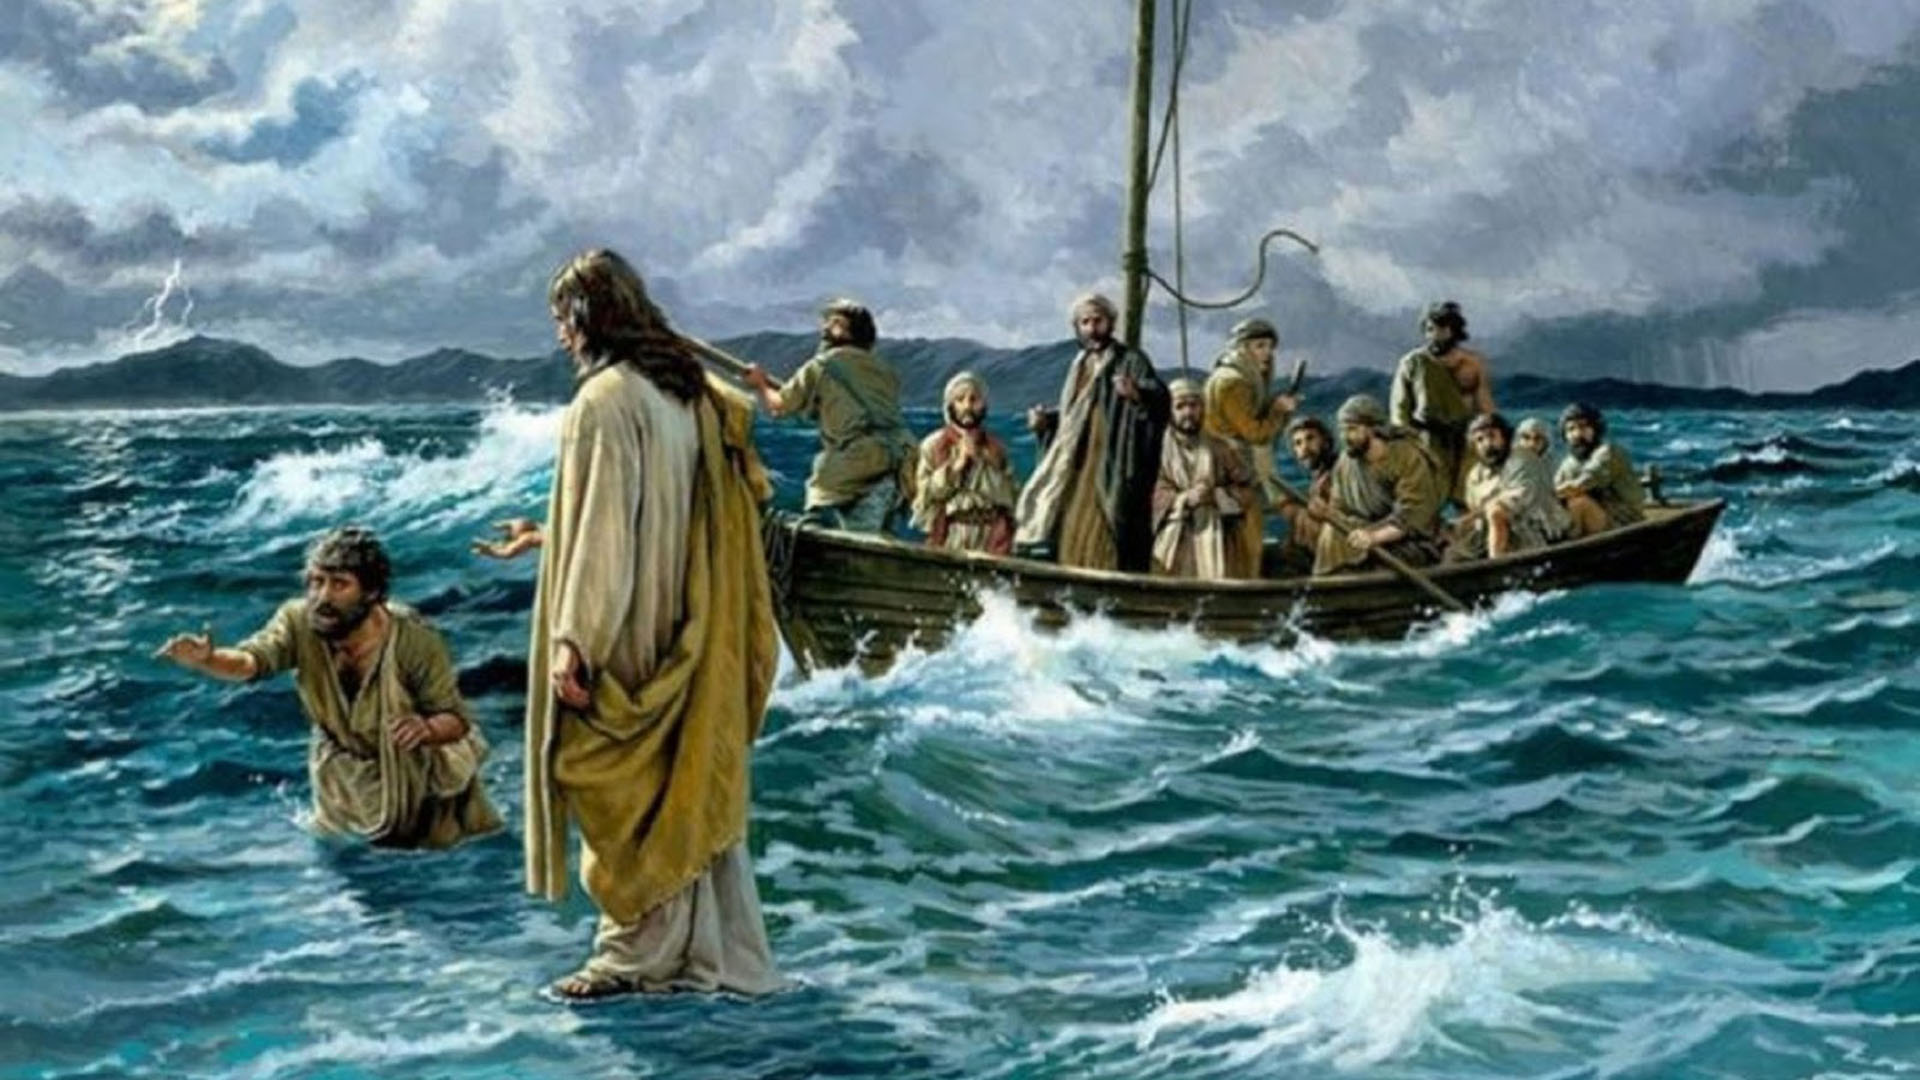 Betsaida aparece mencionada varias veces en los Evangelios, como escenario de varios milagros de Jesús. Aquí, caminando sobre las aguas para ir al encuentro de los discípulos